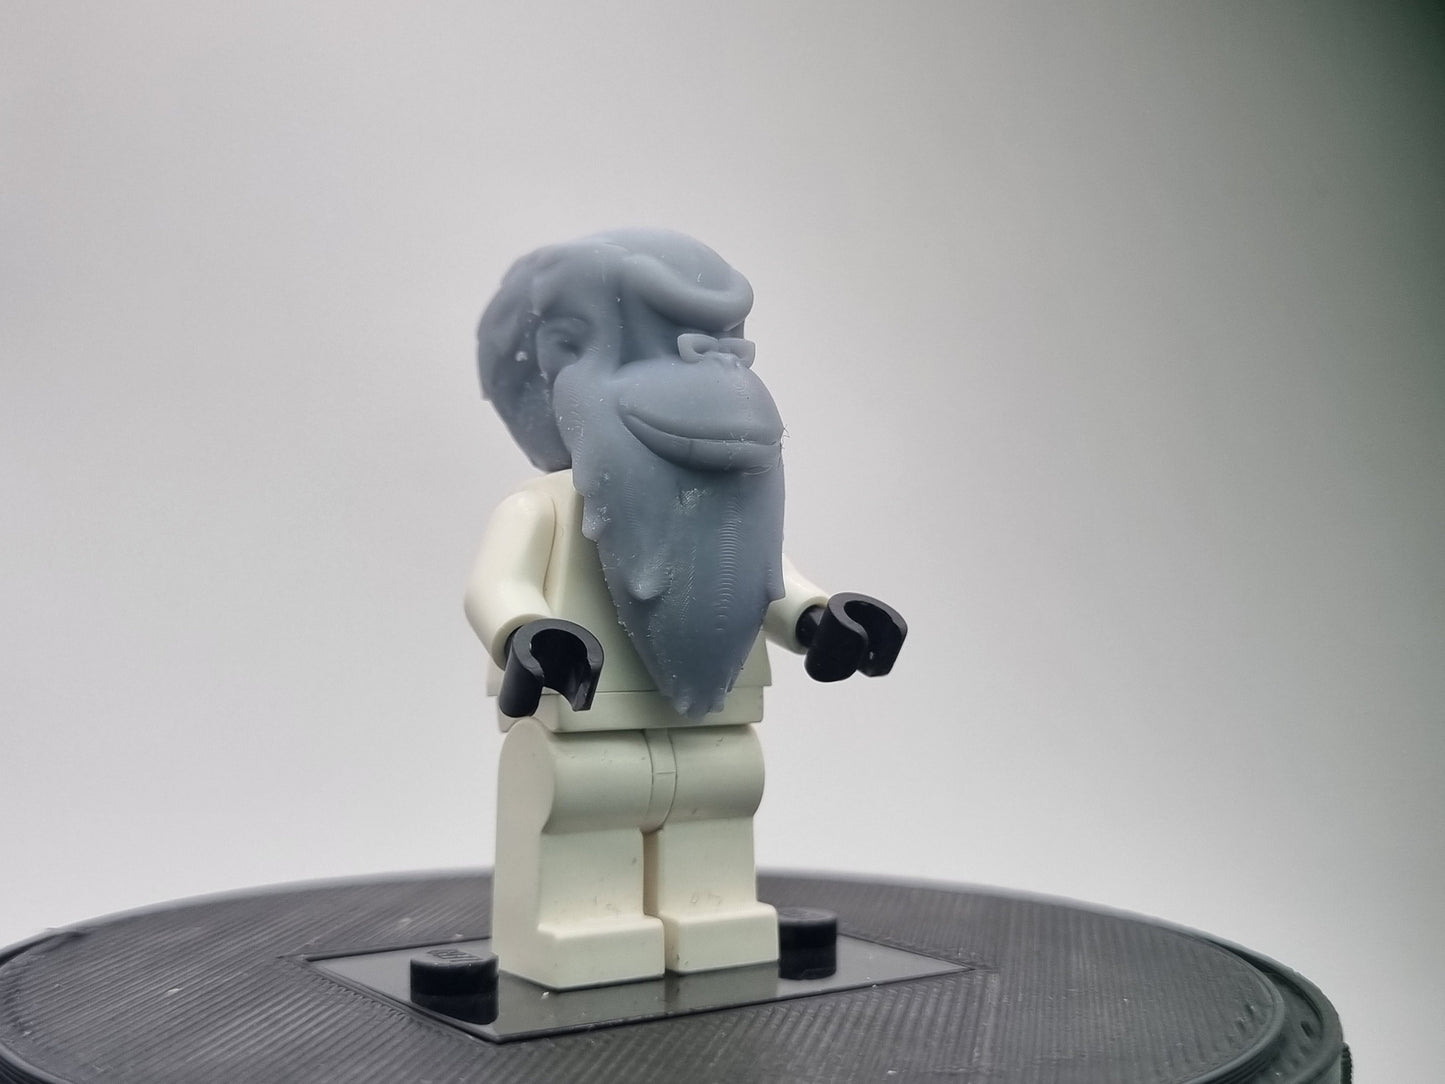 Building toy custom 3D ape with long beard!